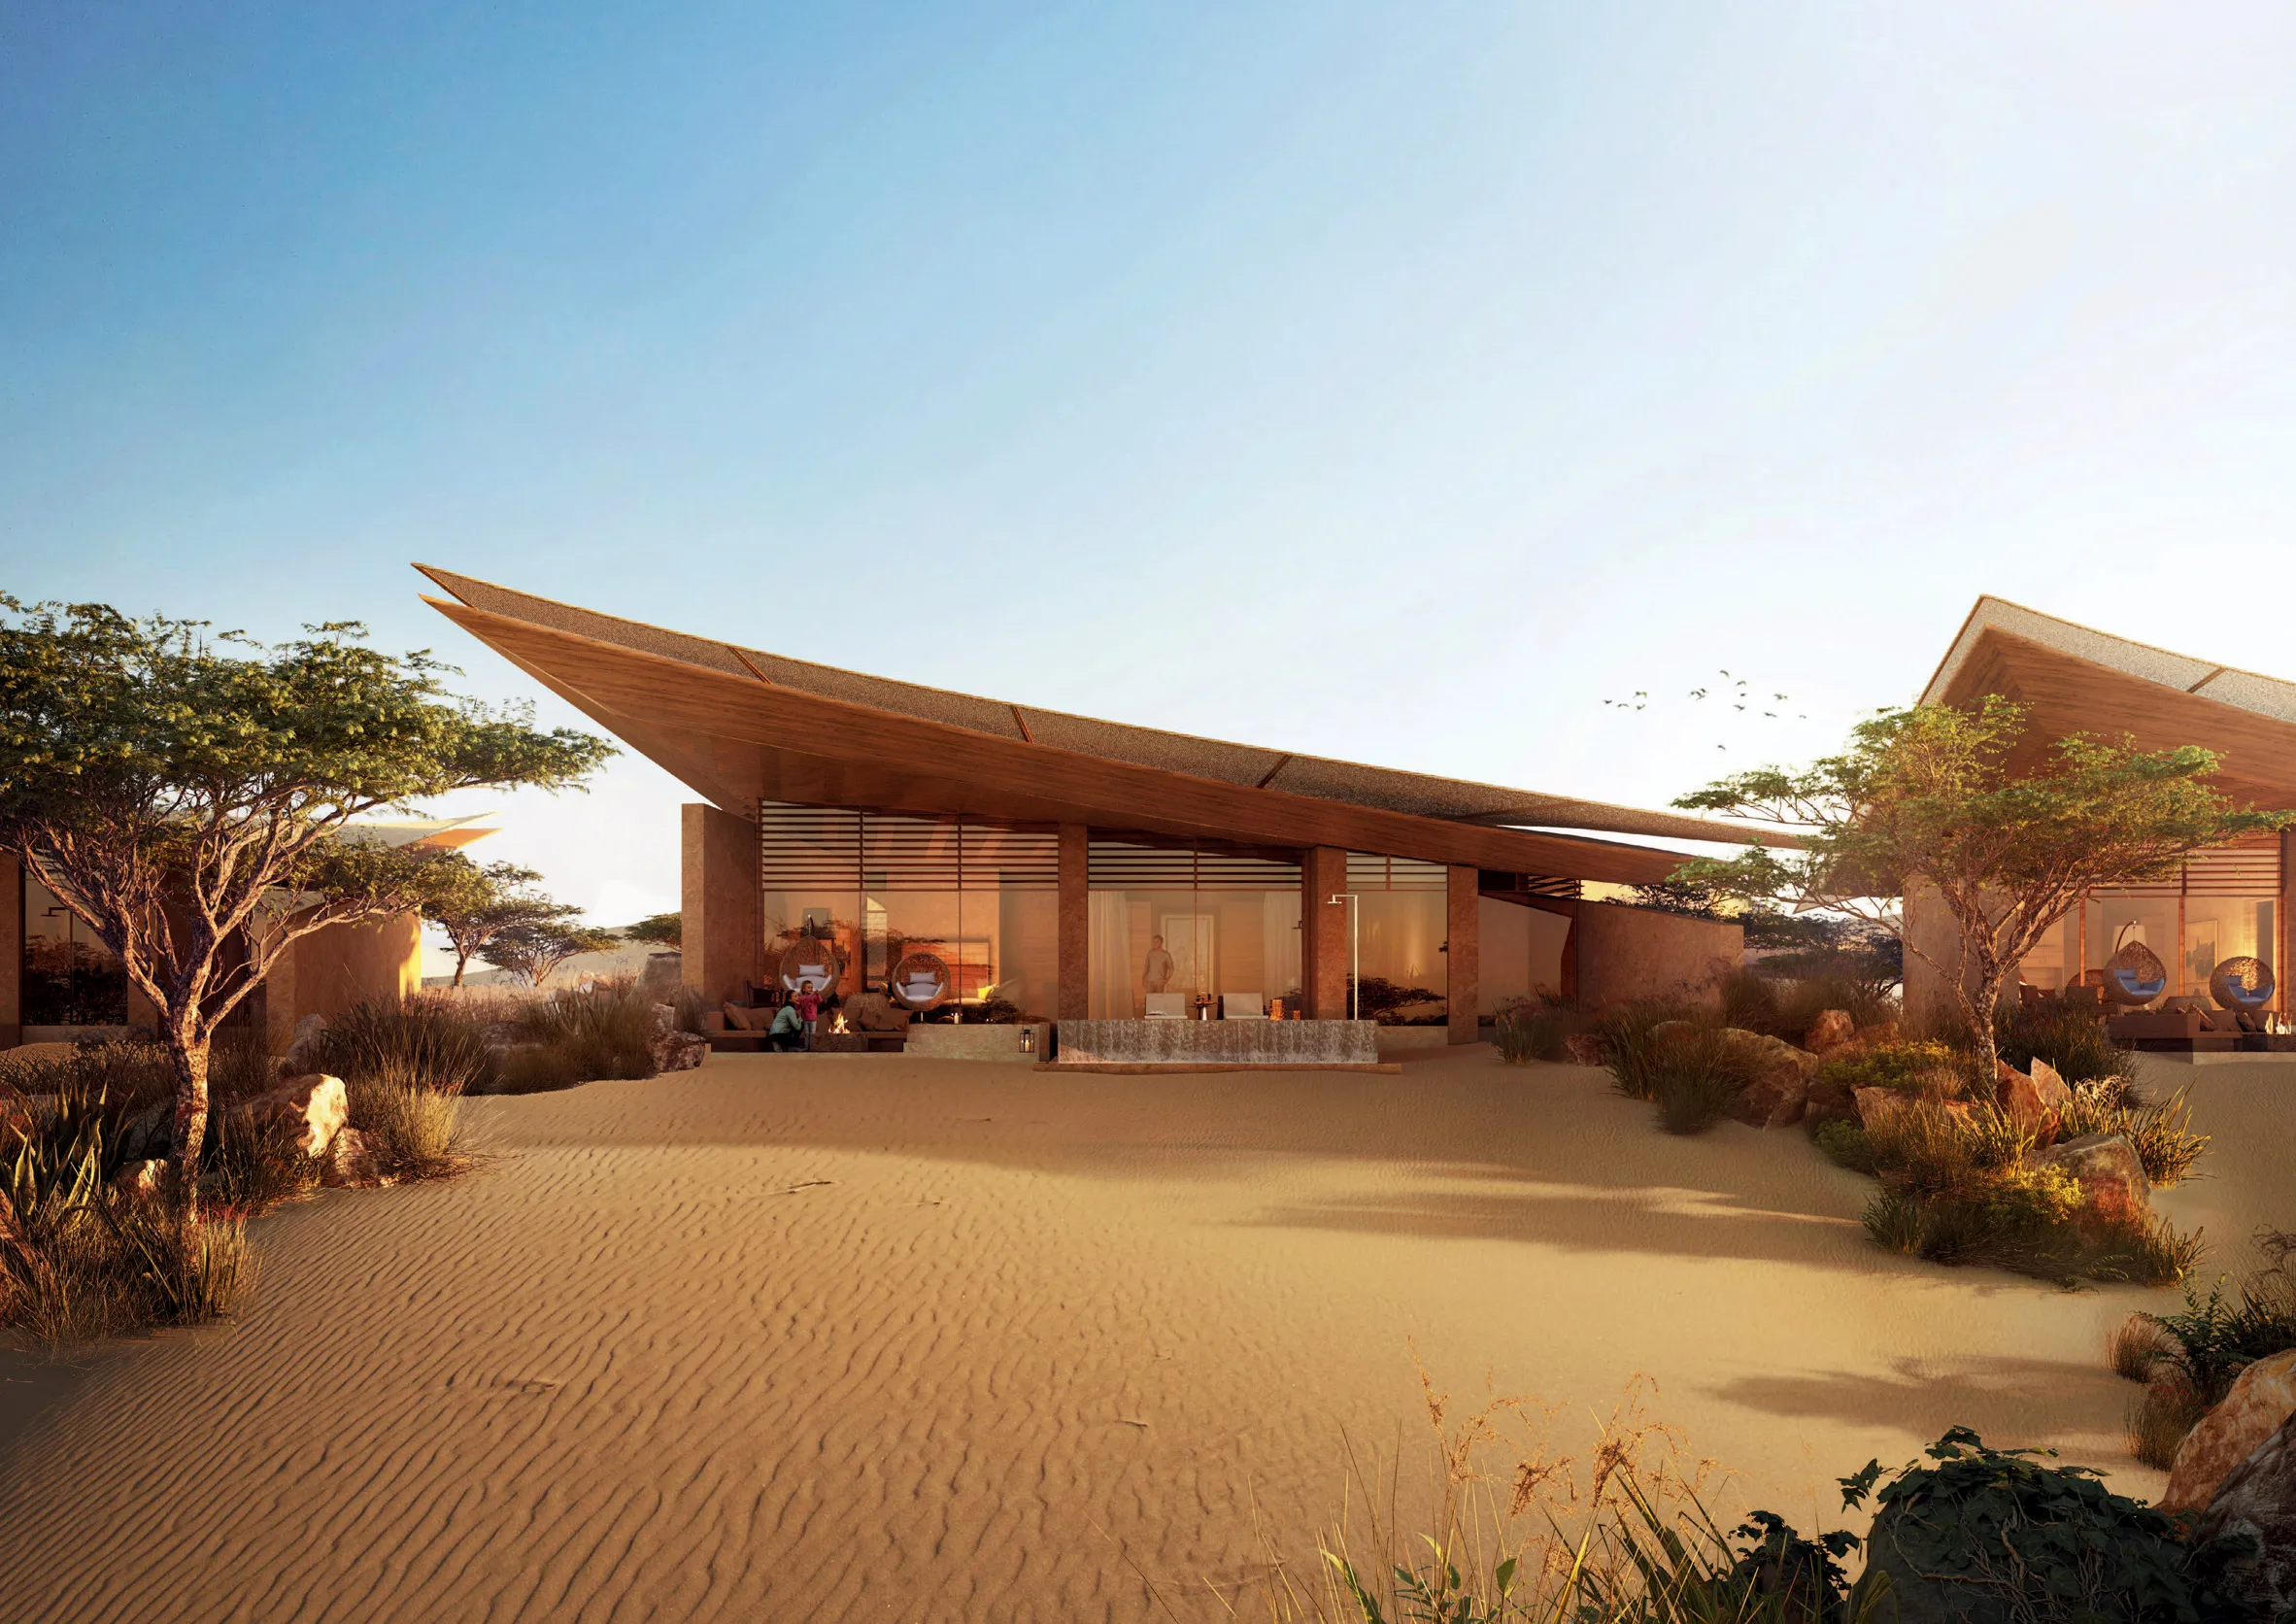 Готель оточений пустельним ландшафтом / Фото Dezeen